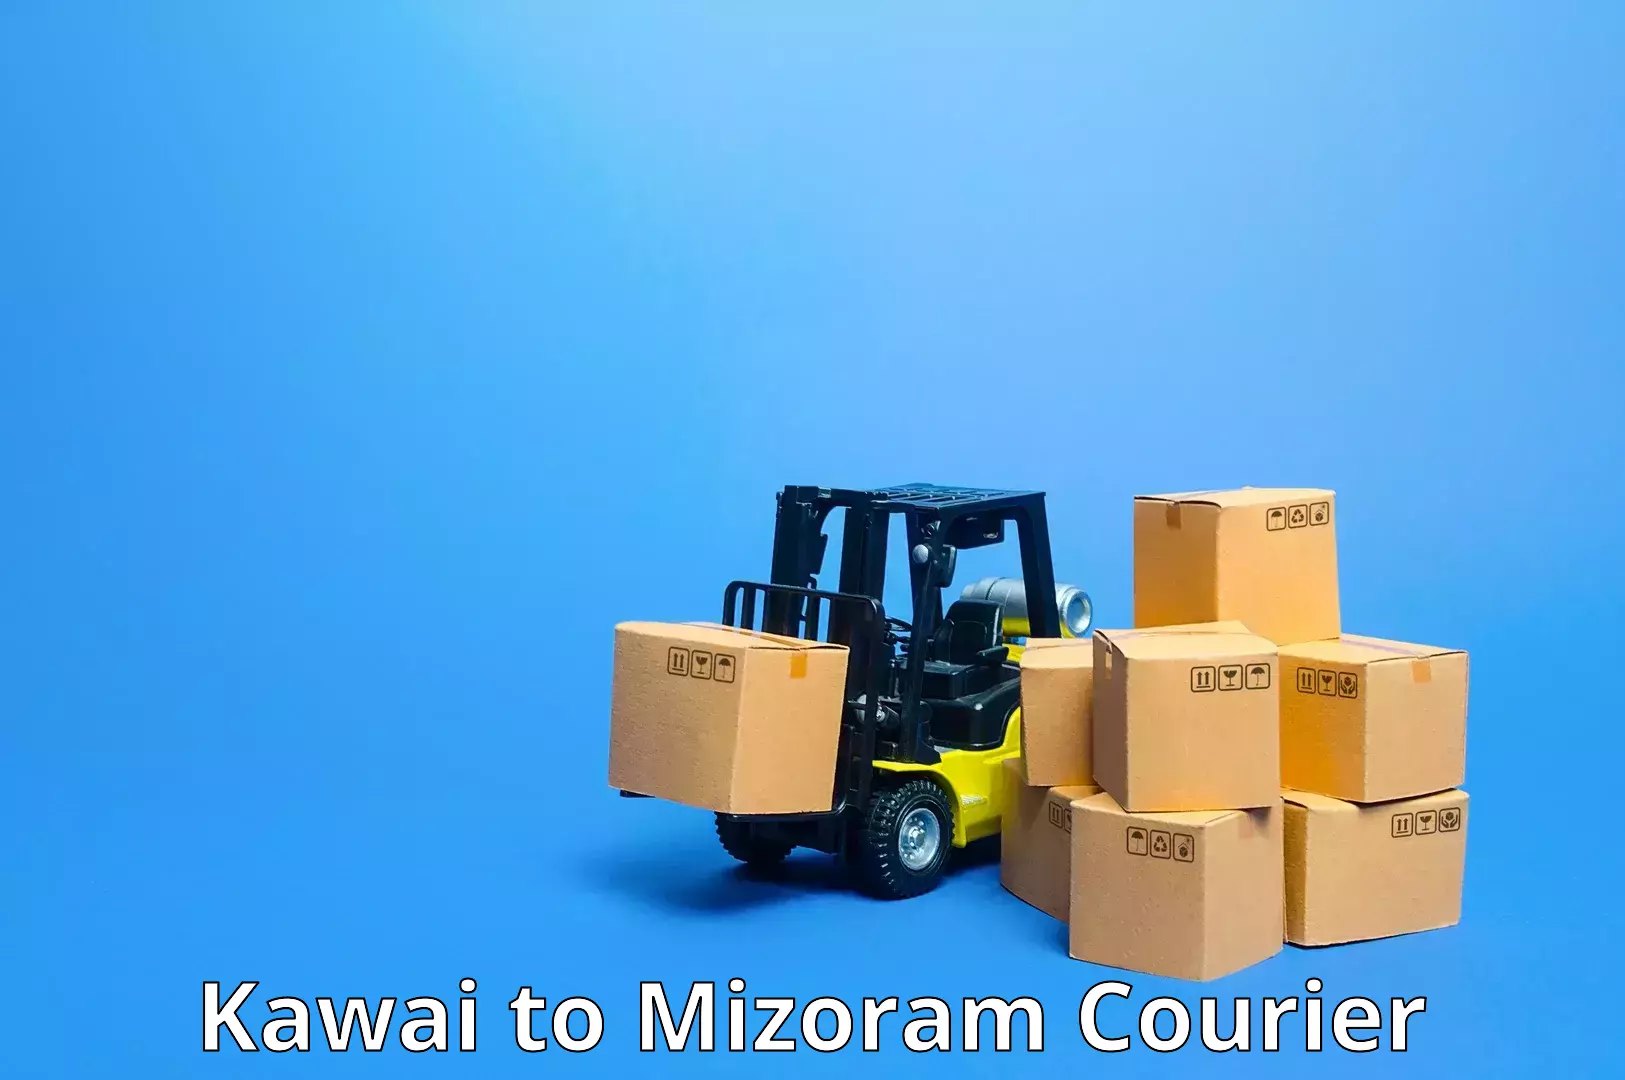 High-performance logistics Kawai to Mizoram